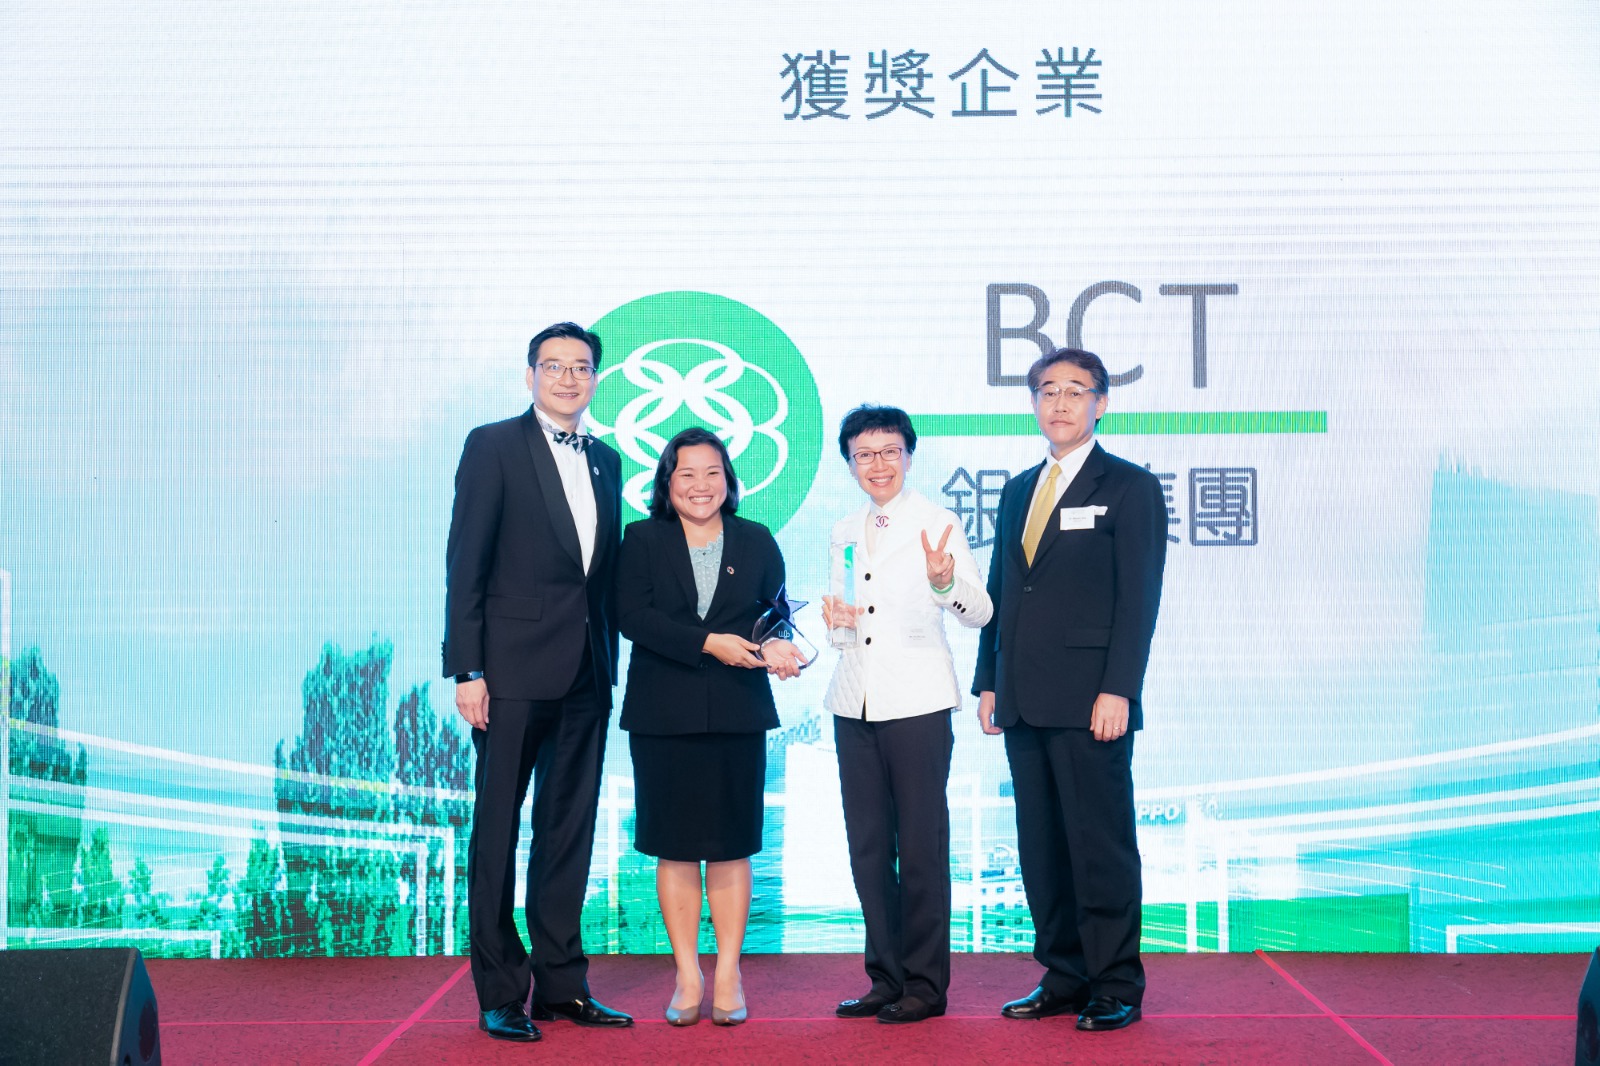 BCT銀聯集團董事總經理及行政總裁劉嘉時 (右二) 獲聯合國亞洲及太平洋經濟社會委員會的發展融資主管Tientip Subhanij (左二) 頒發兩個大奬